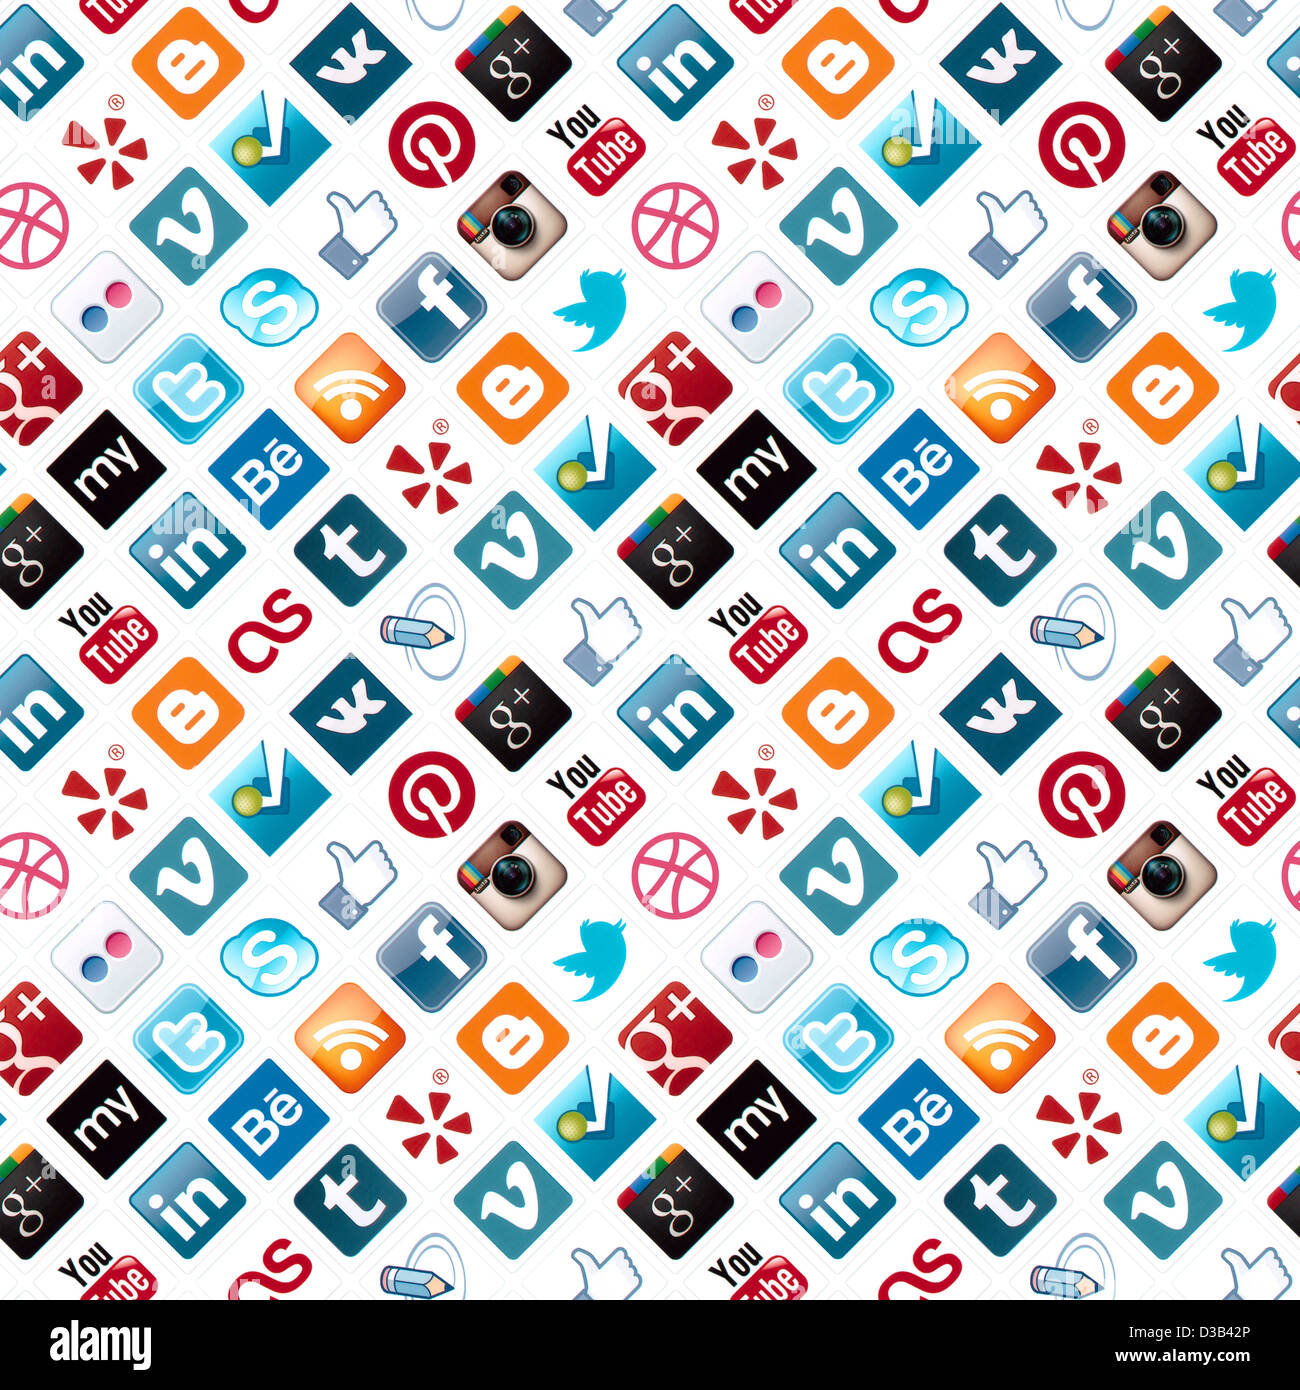 Ein nahtloses Muster mit Logo-Sammlung von bekannten social-Media-Marke auf Papier gedruckt Stockfoto